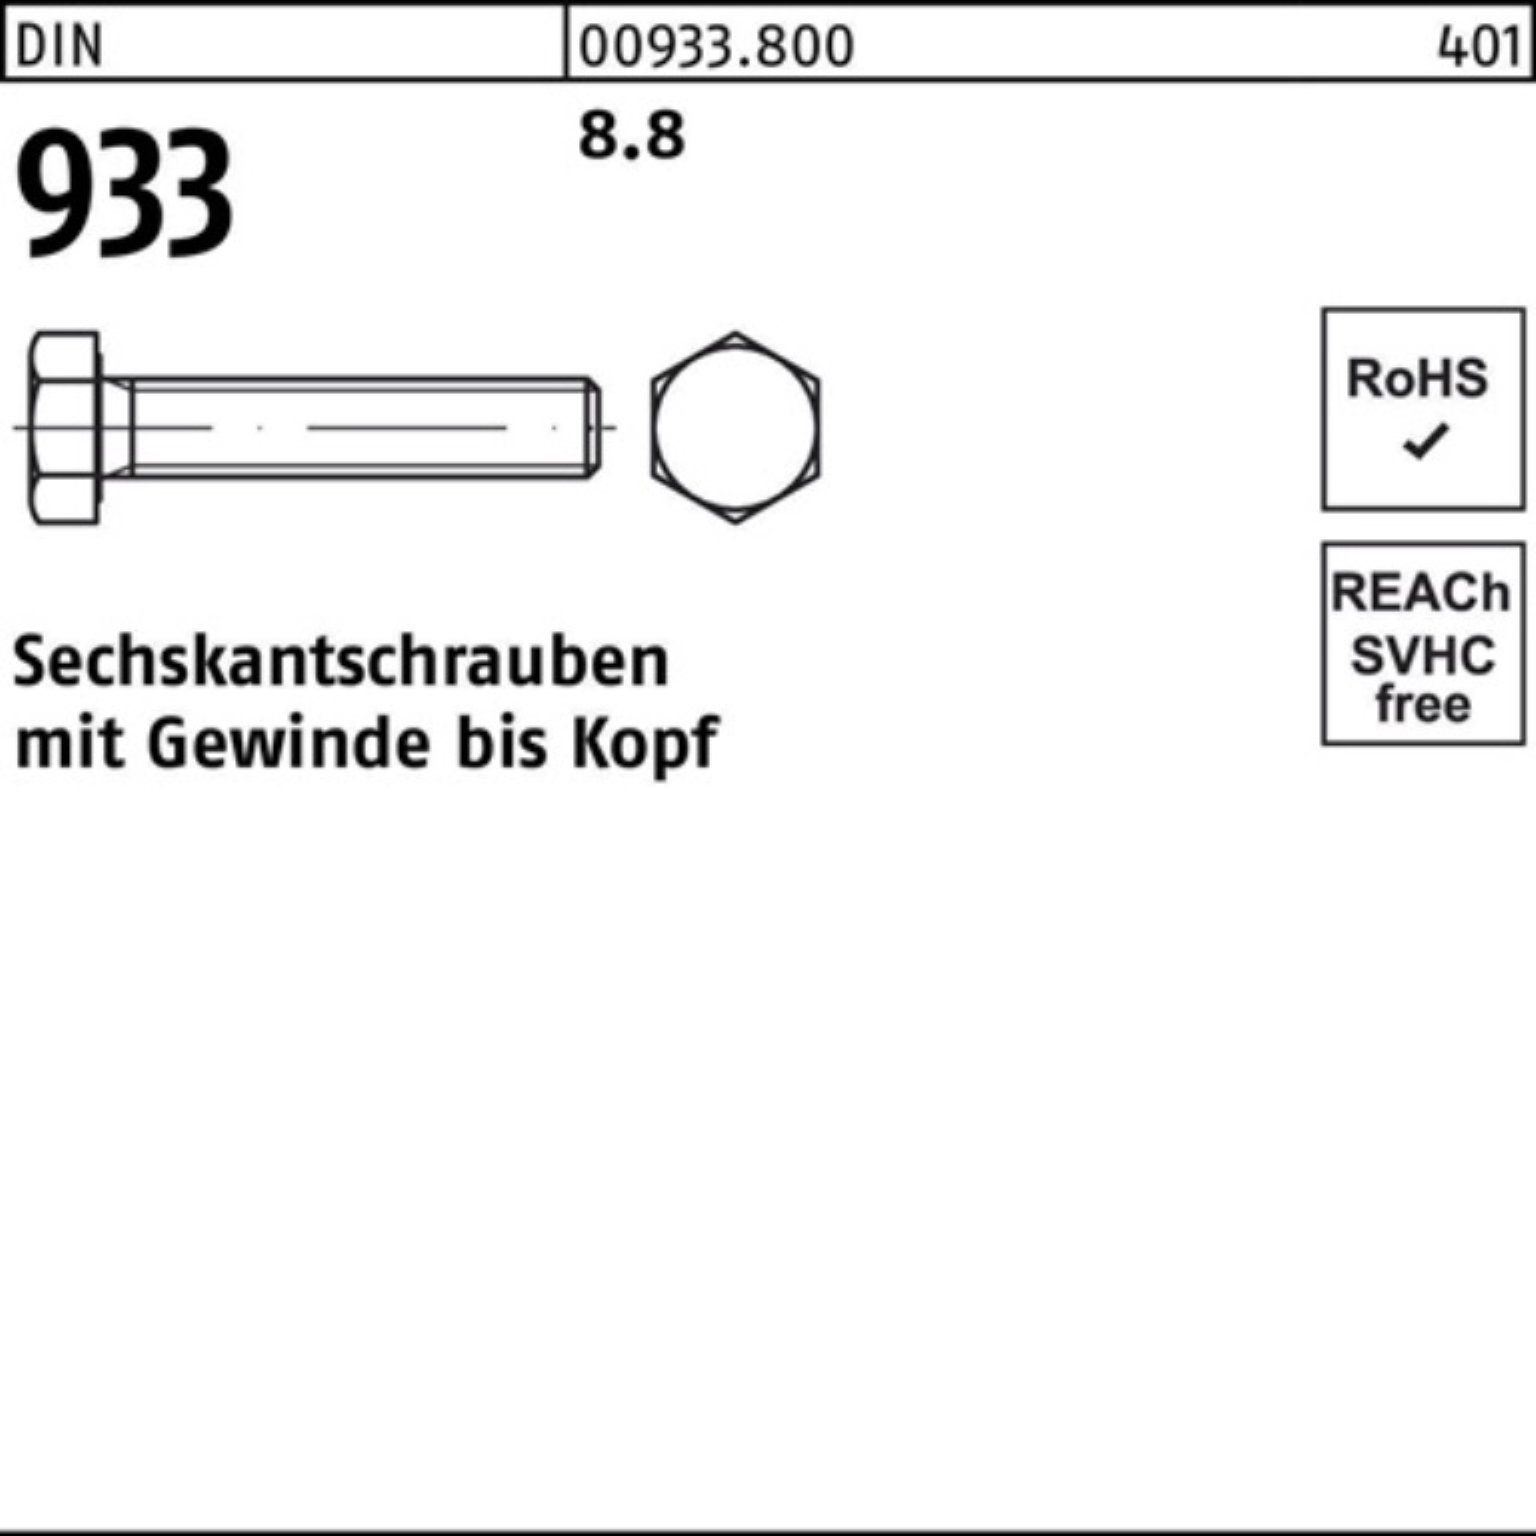 Reyher Sechskantschraube 933 DIN Stück 8 6 500 M6x DIN Pack 500er Sechskantschraube VG 933 8.8